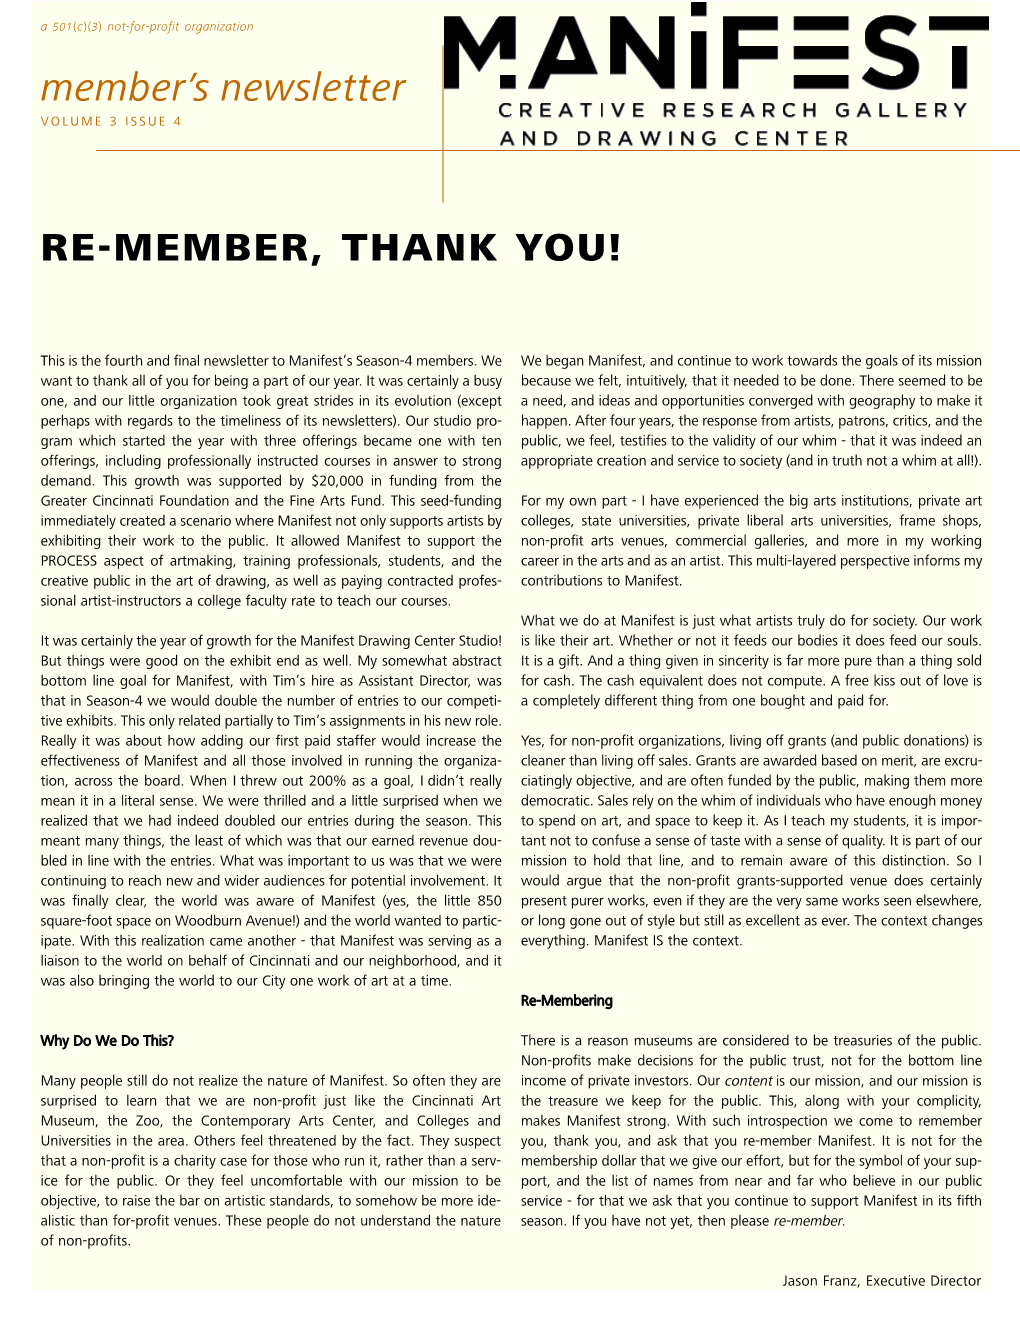 Member's Newsletter RE-MEMBER, THANK YOU!